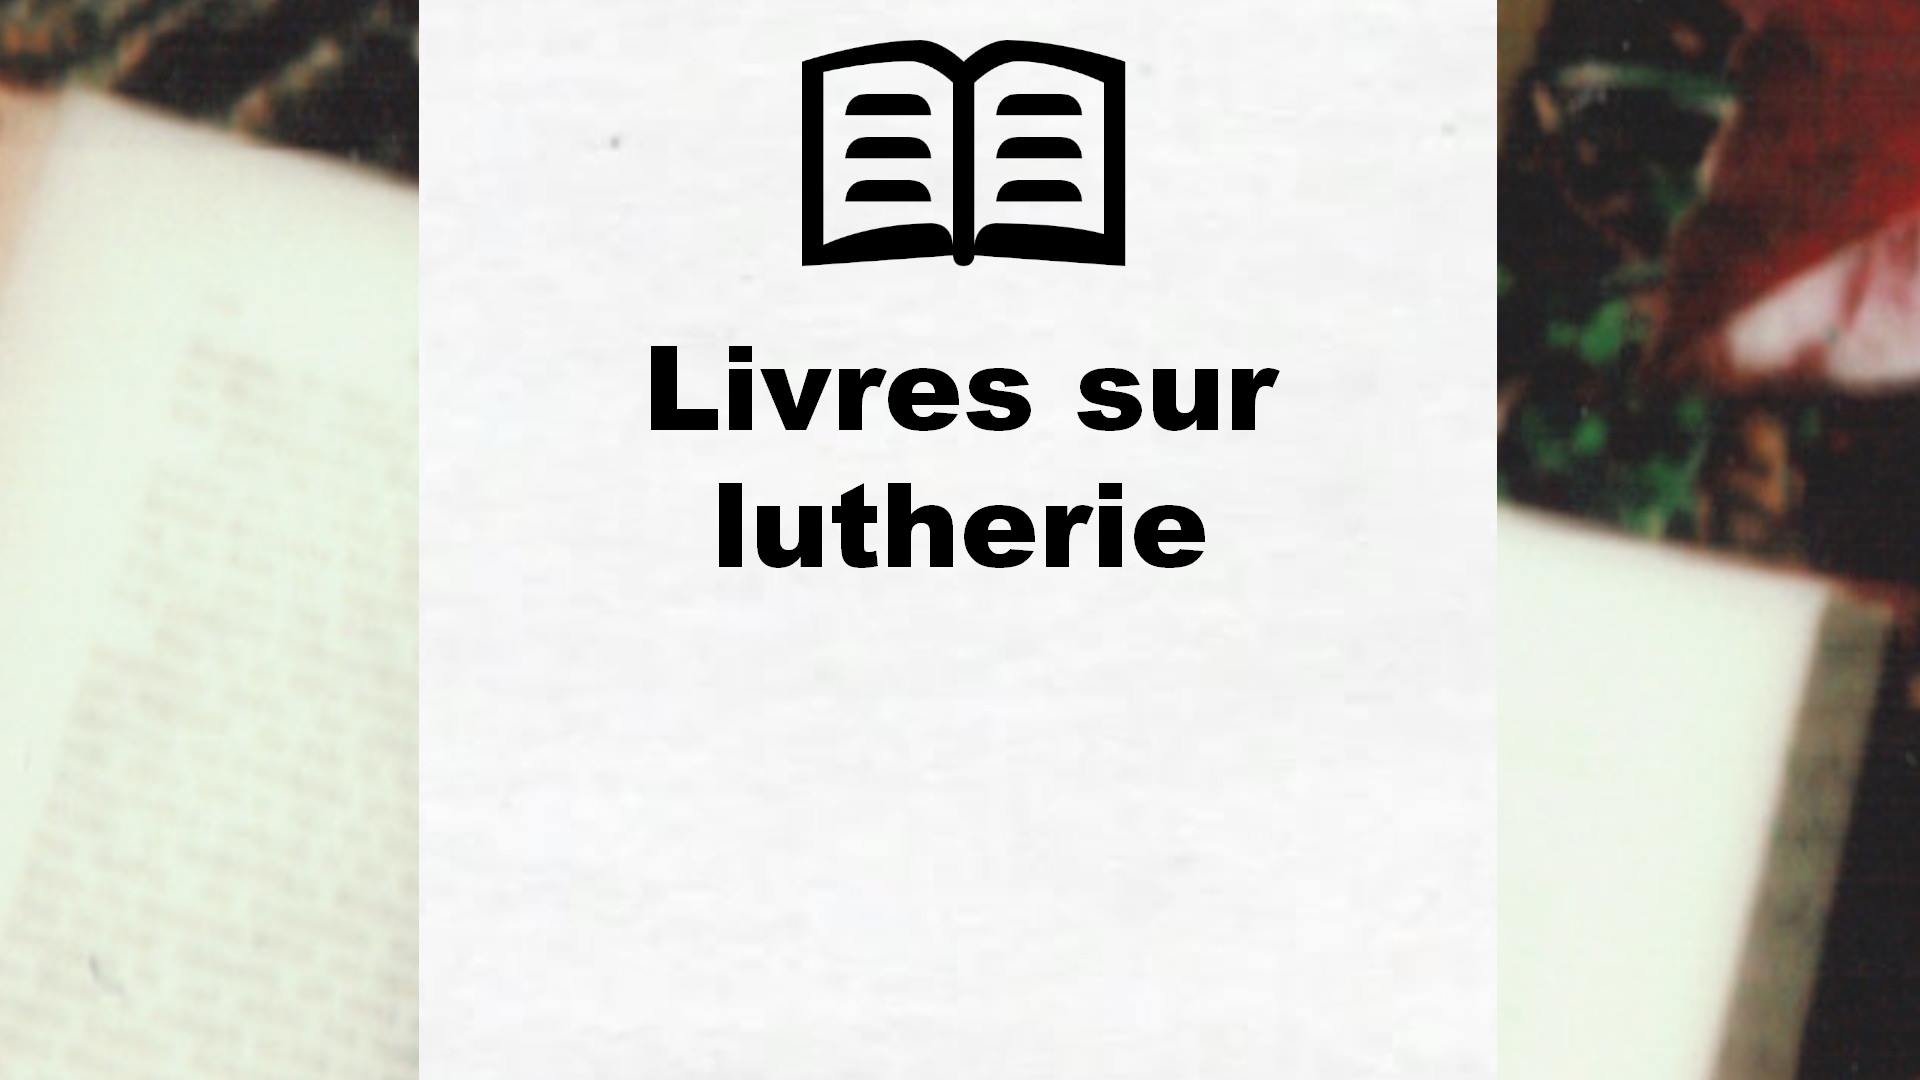 Livres sur lutherie